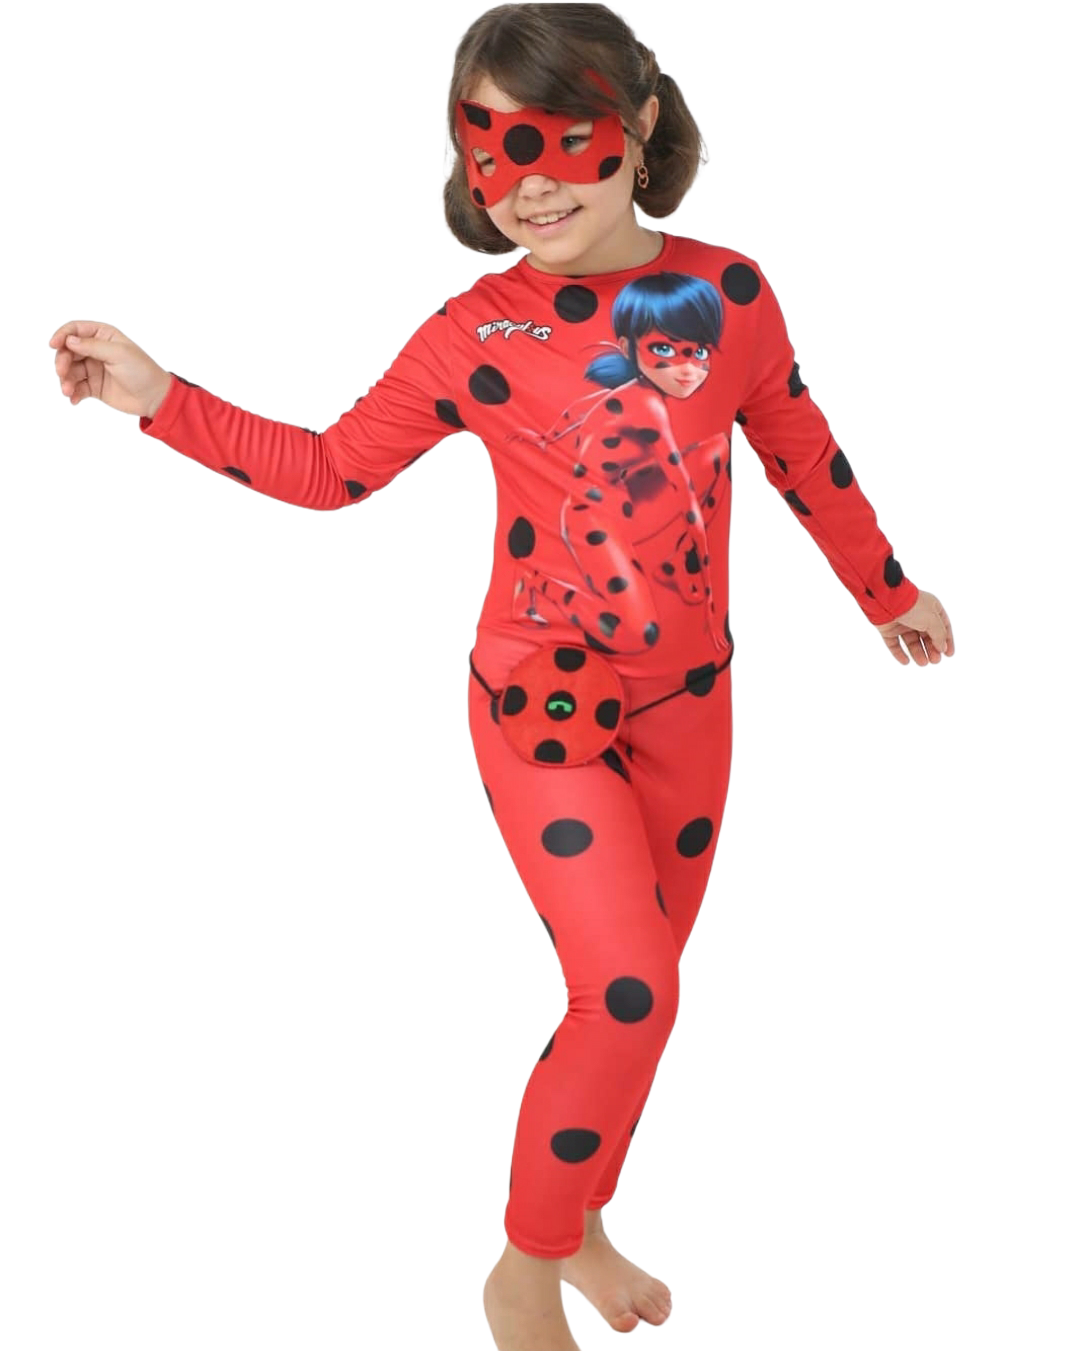 Mucize Uğur Böceği Kostümü | Miraculous Tales of Ladybug Costume